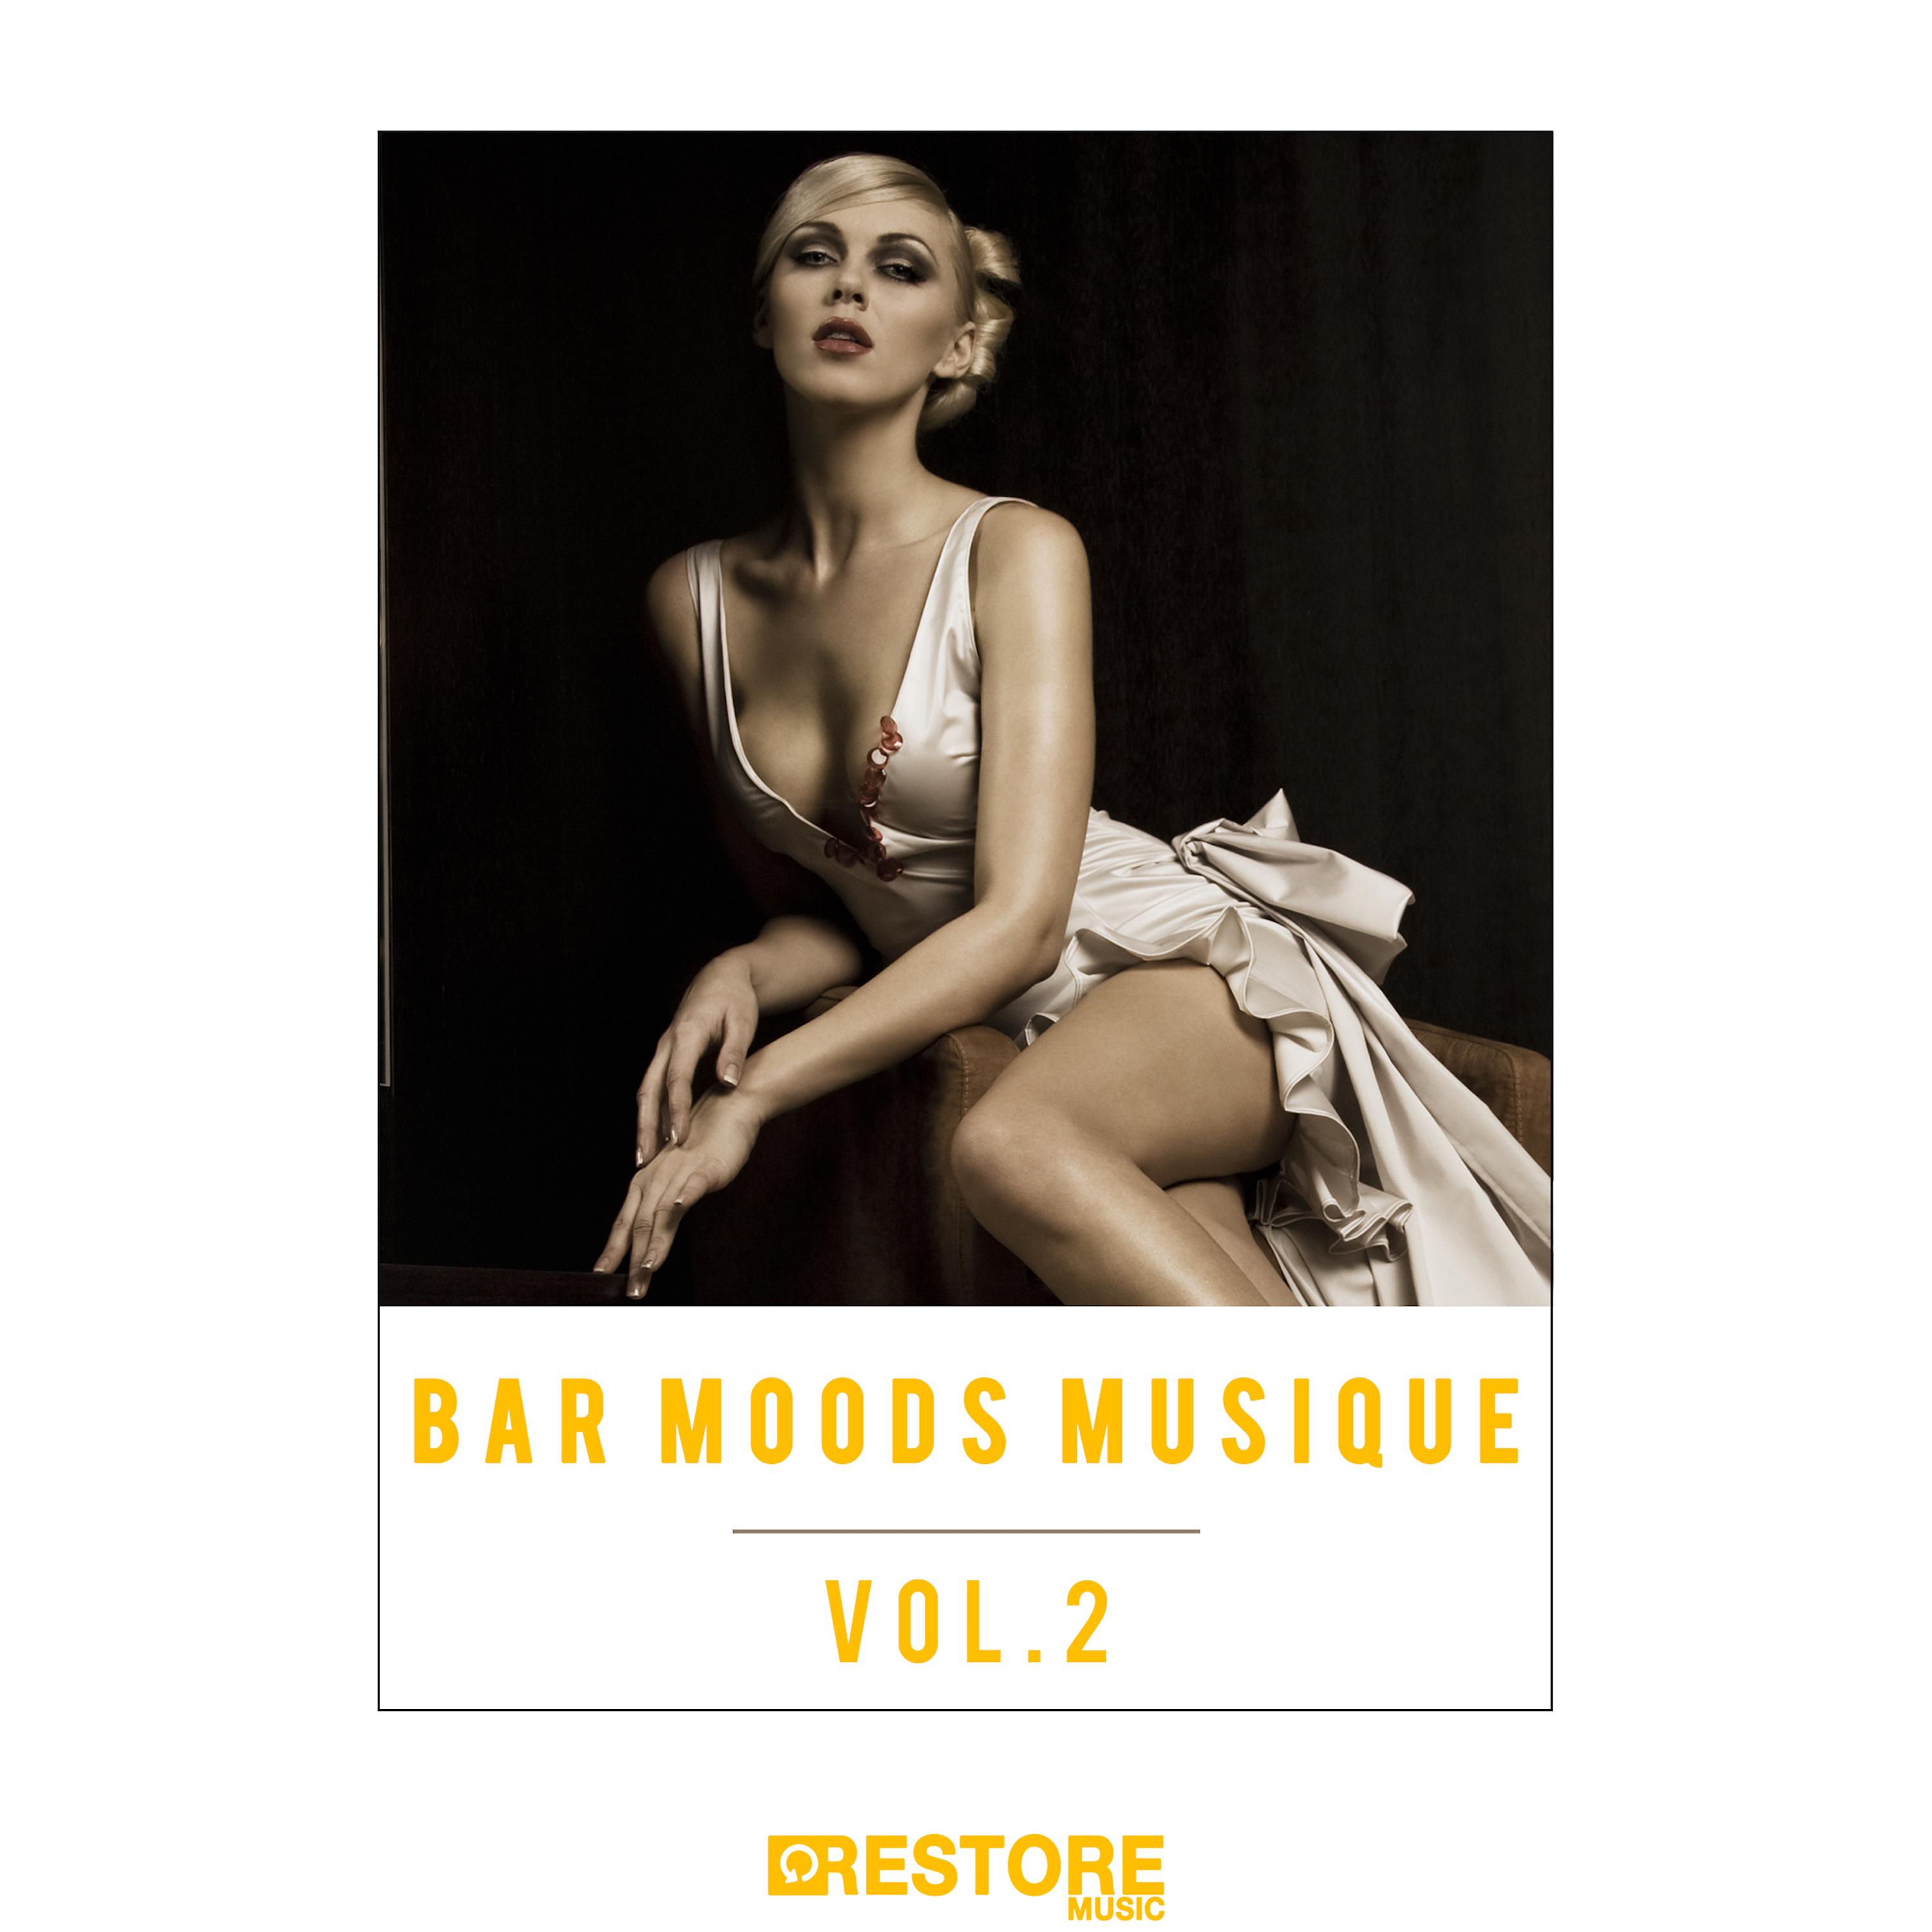 Bar moods musique, Vol. 2